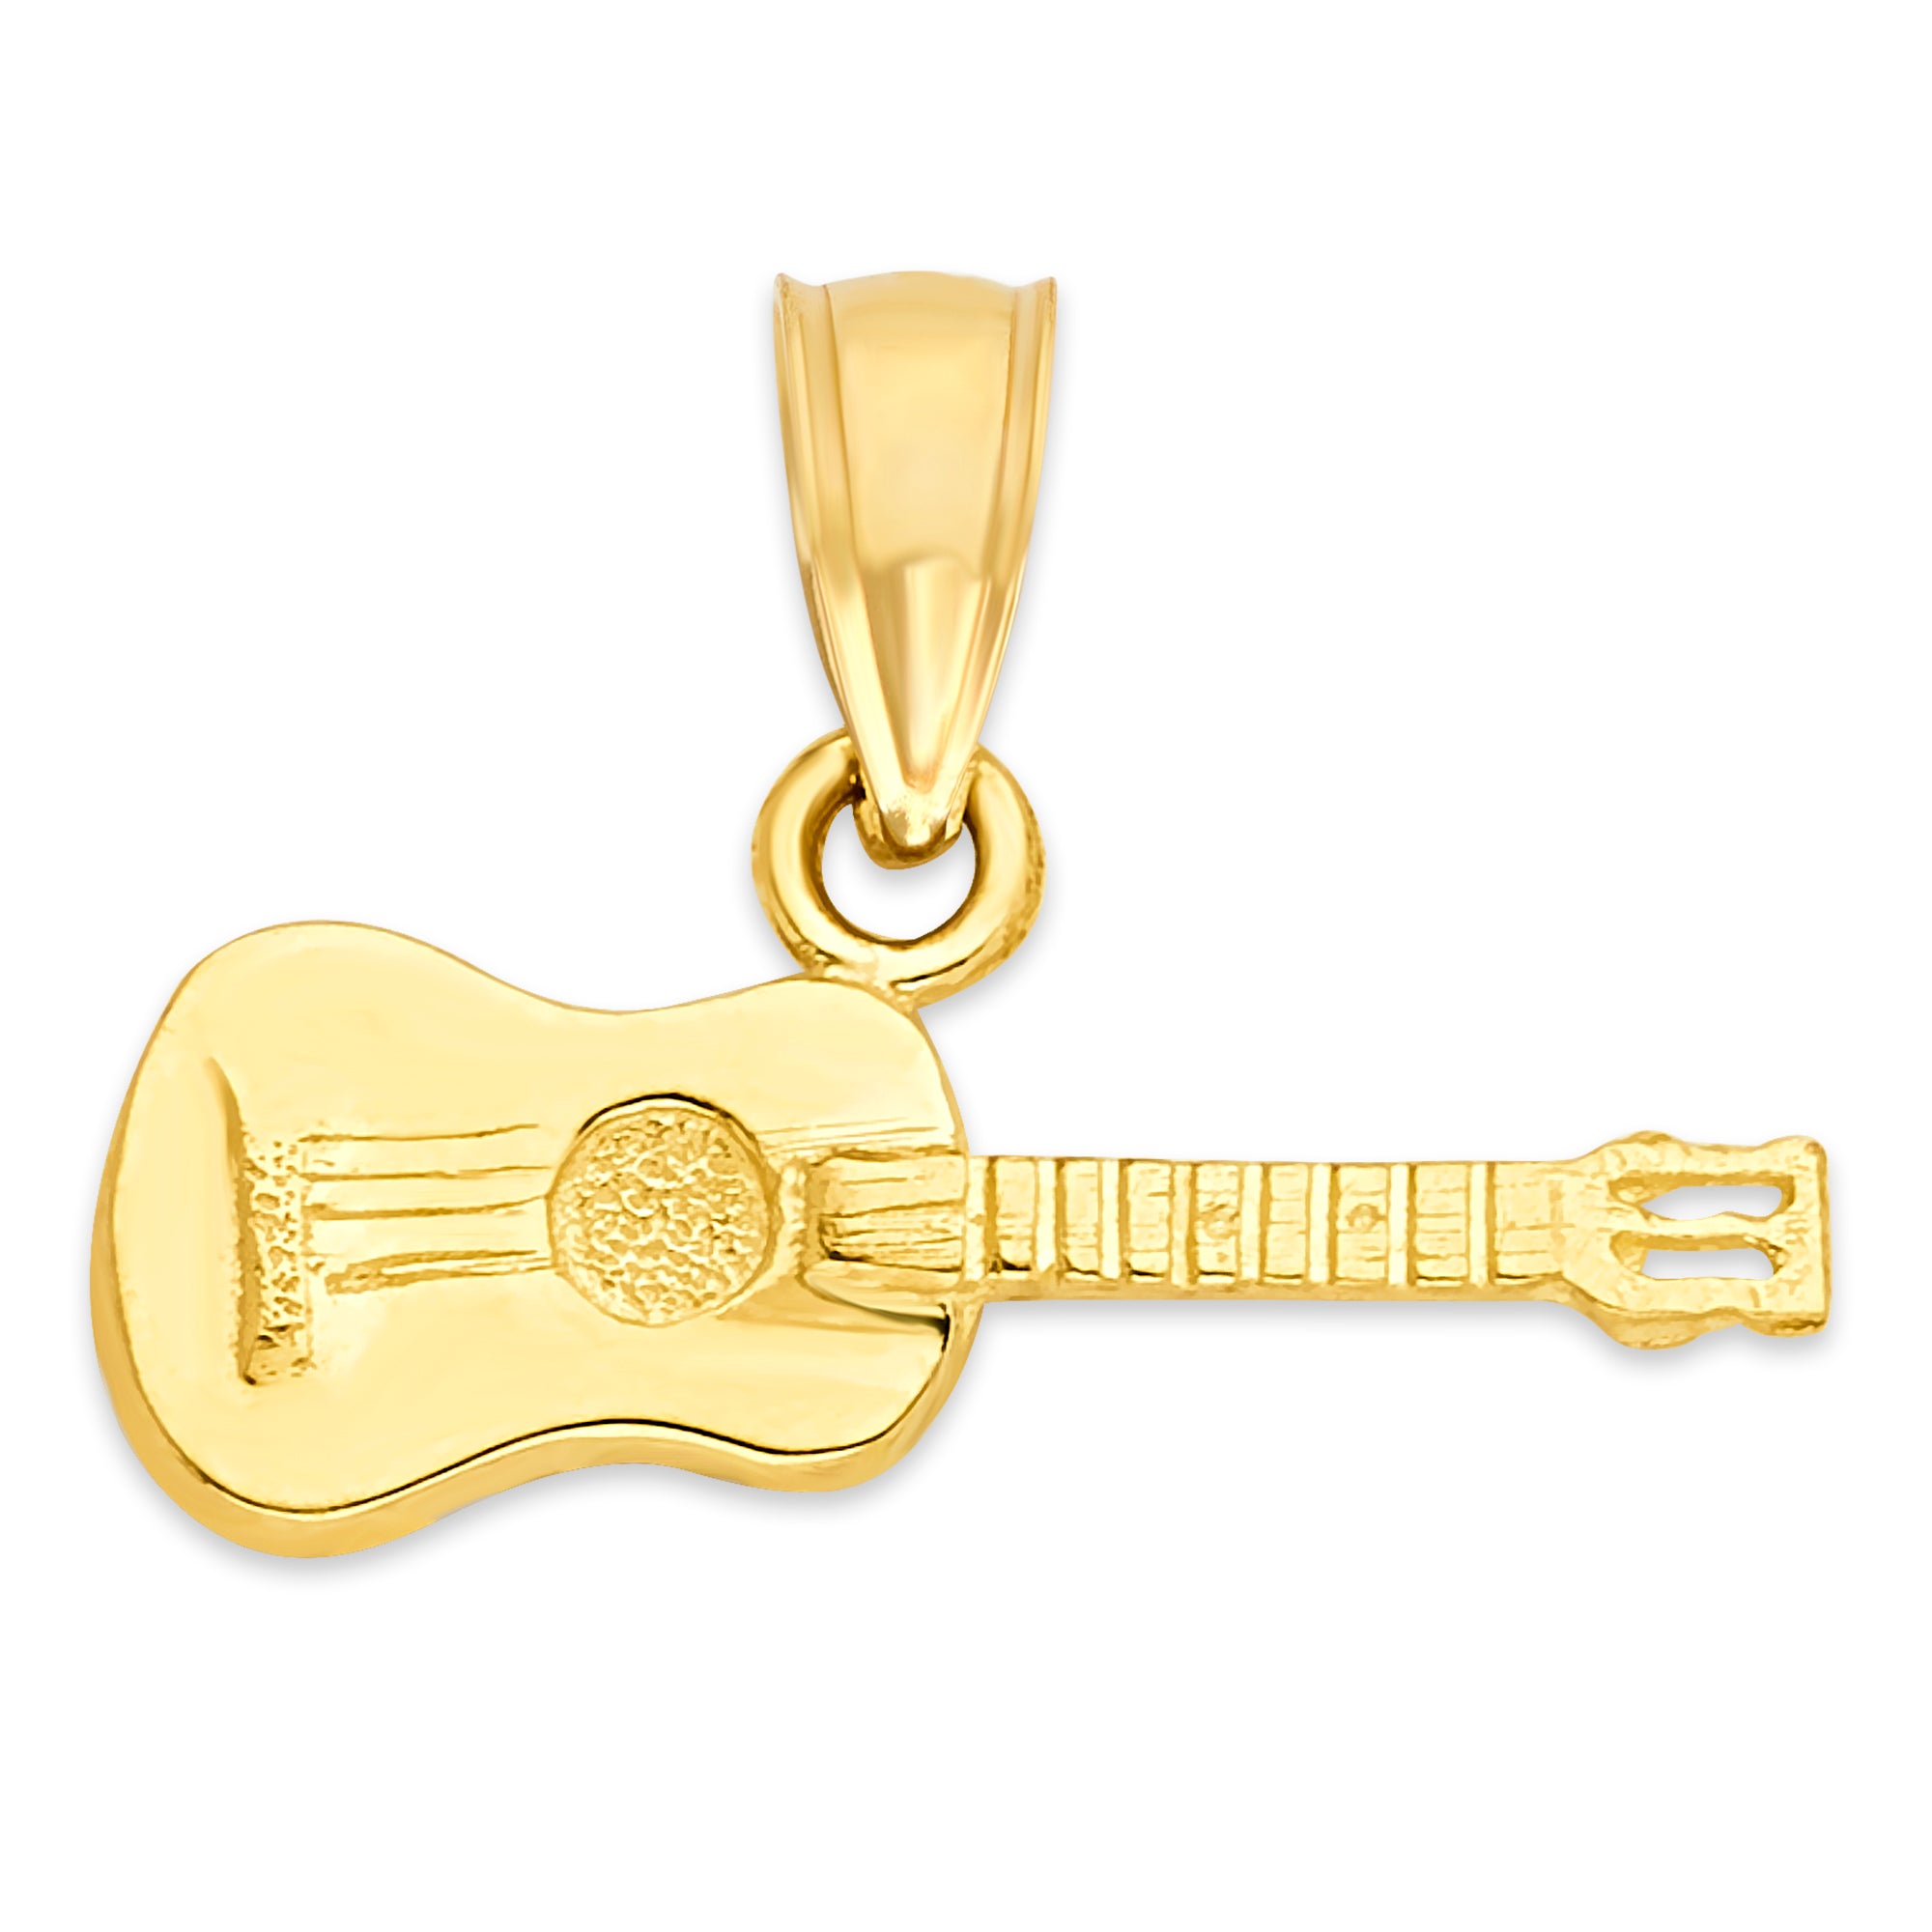 Solid Gold Guitar Pendant - 10k or 14k